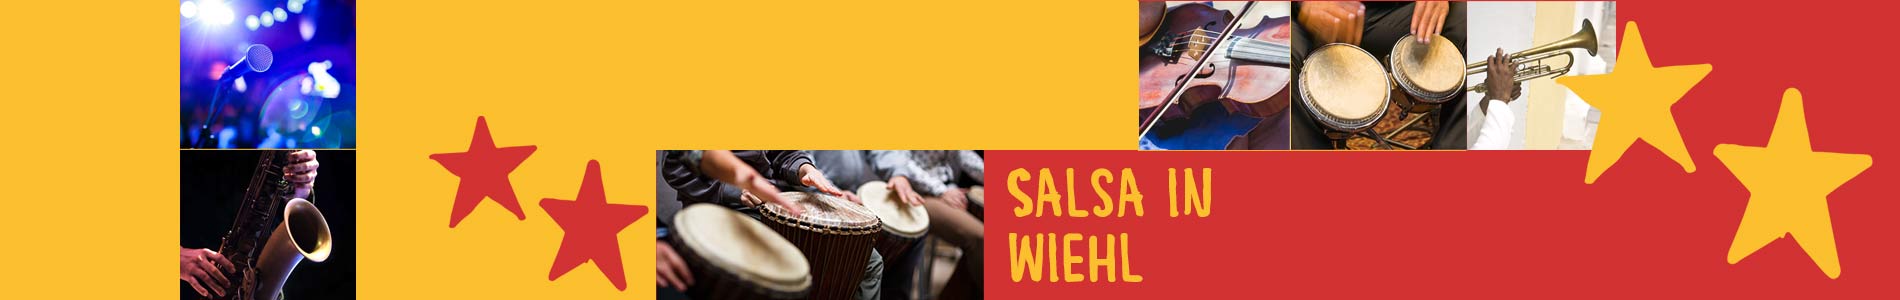 Salsa in Wiehl – Salsa lernen und tanzen, Tanzkurse, Partys, Veranstaltungen